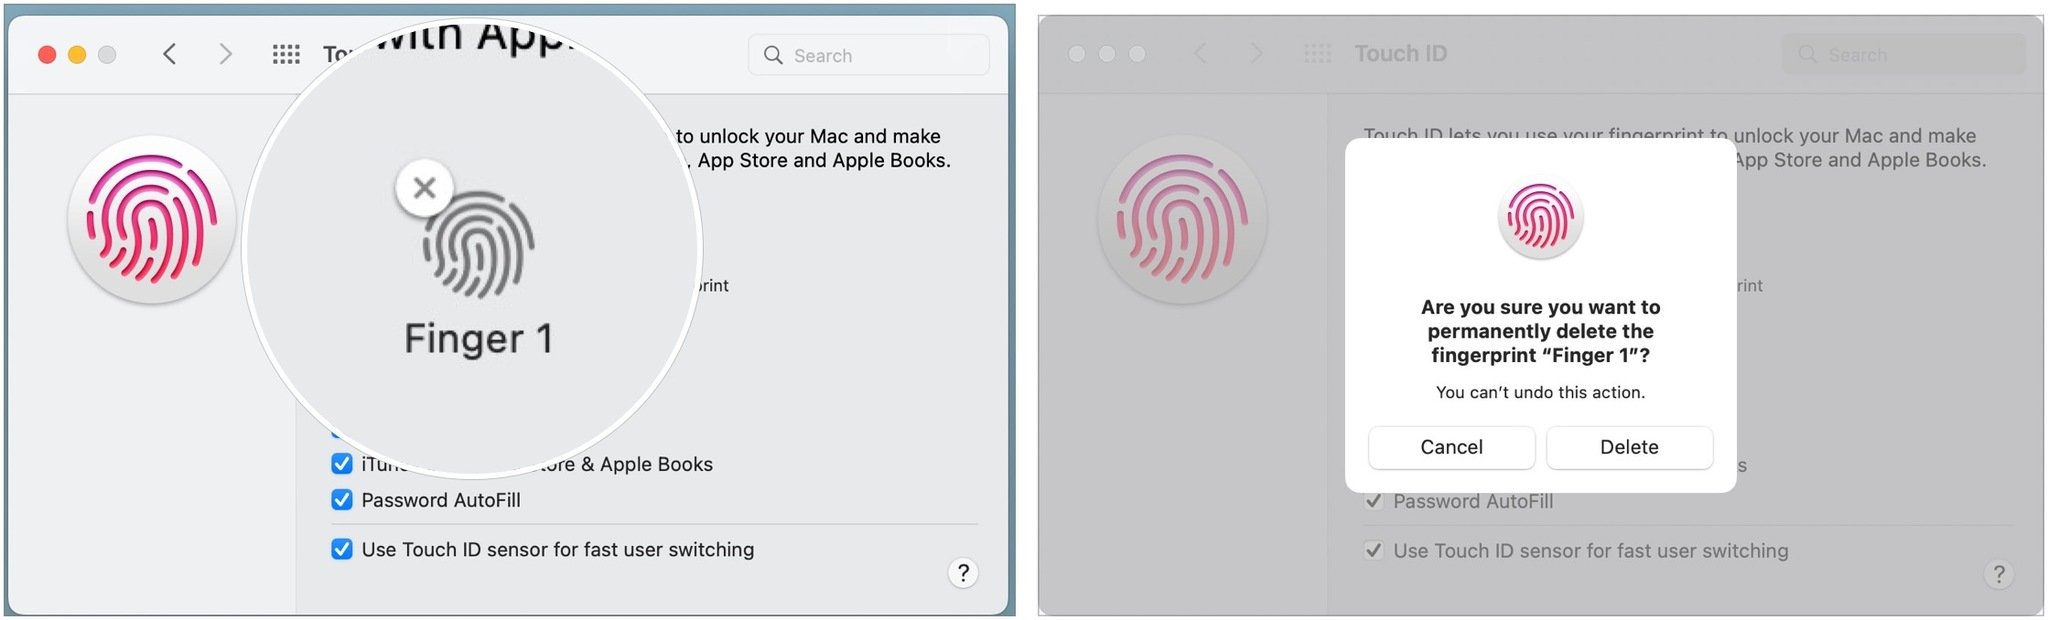 Pour supprimer et rajouter vos empreintes digitales Touch ID, survolez l'empreinte digitale que vous souhaitez supprimer et cliquez sur le X. Entrez votre mot de passe puis confirmez que vous souhaitez supprimer le Touch ID.